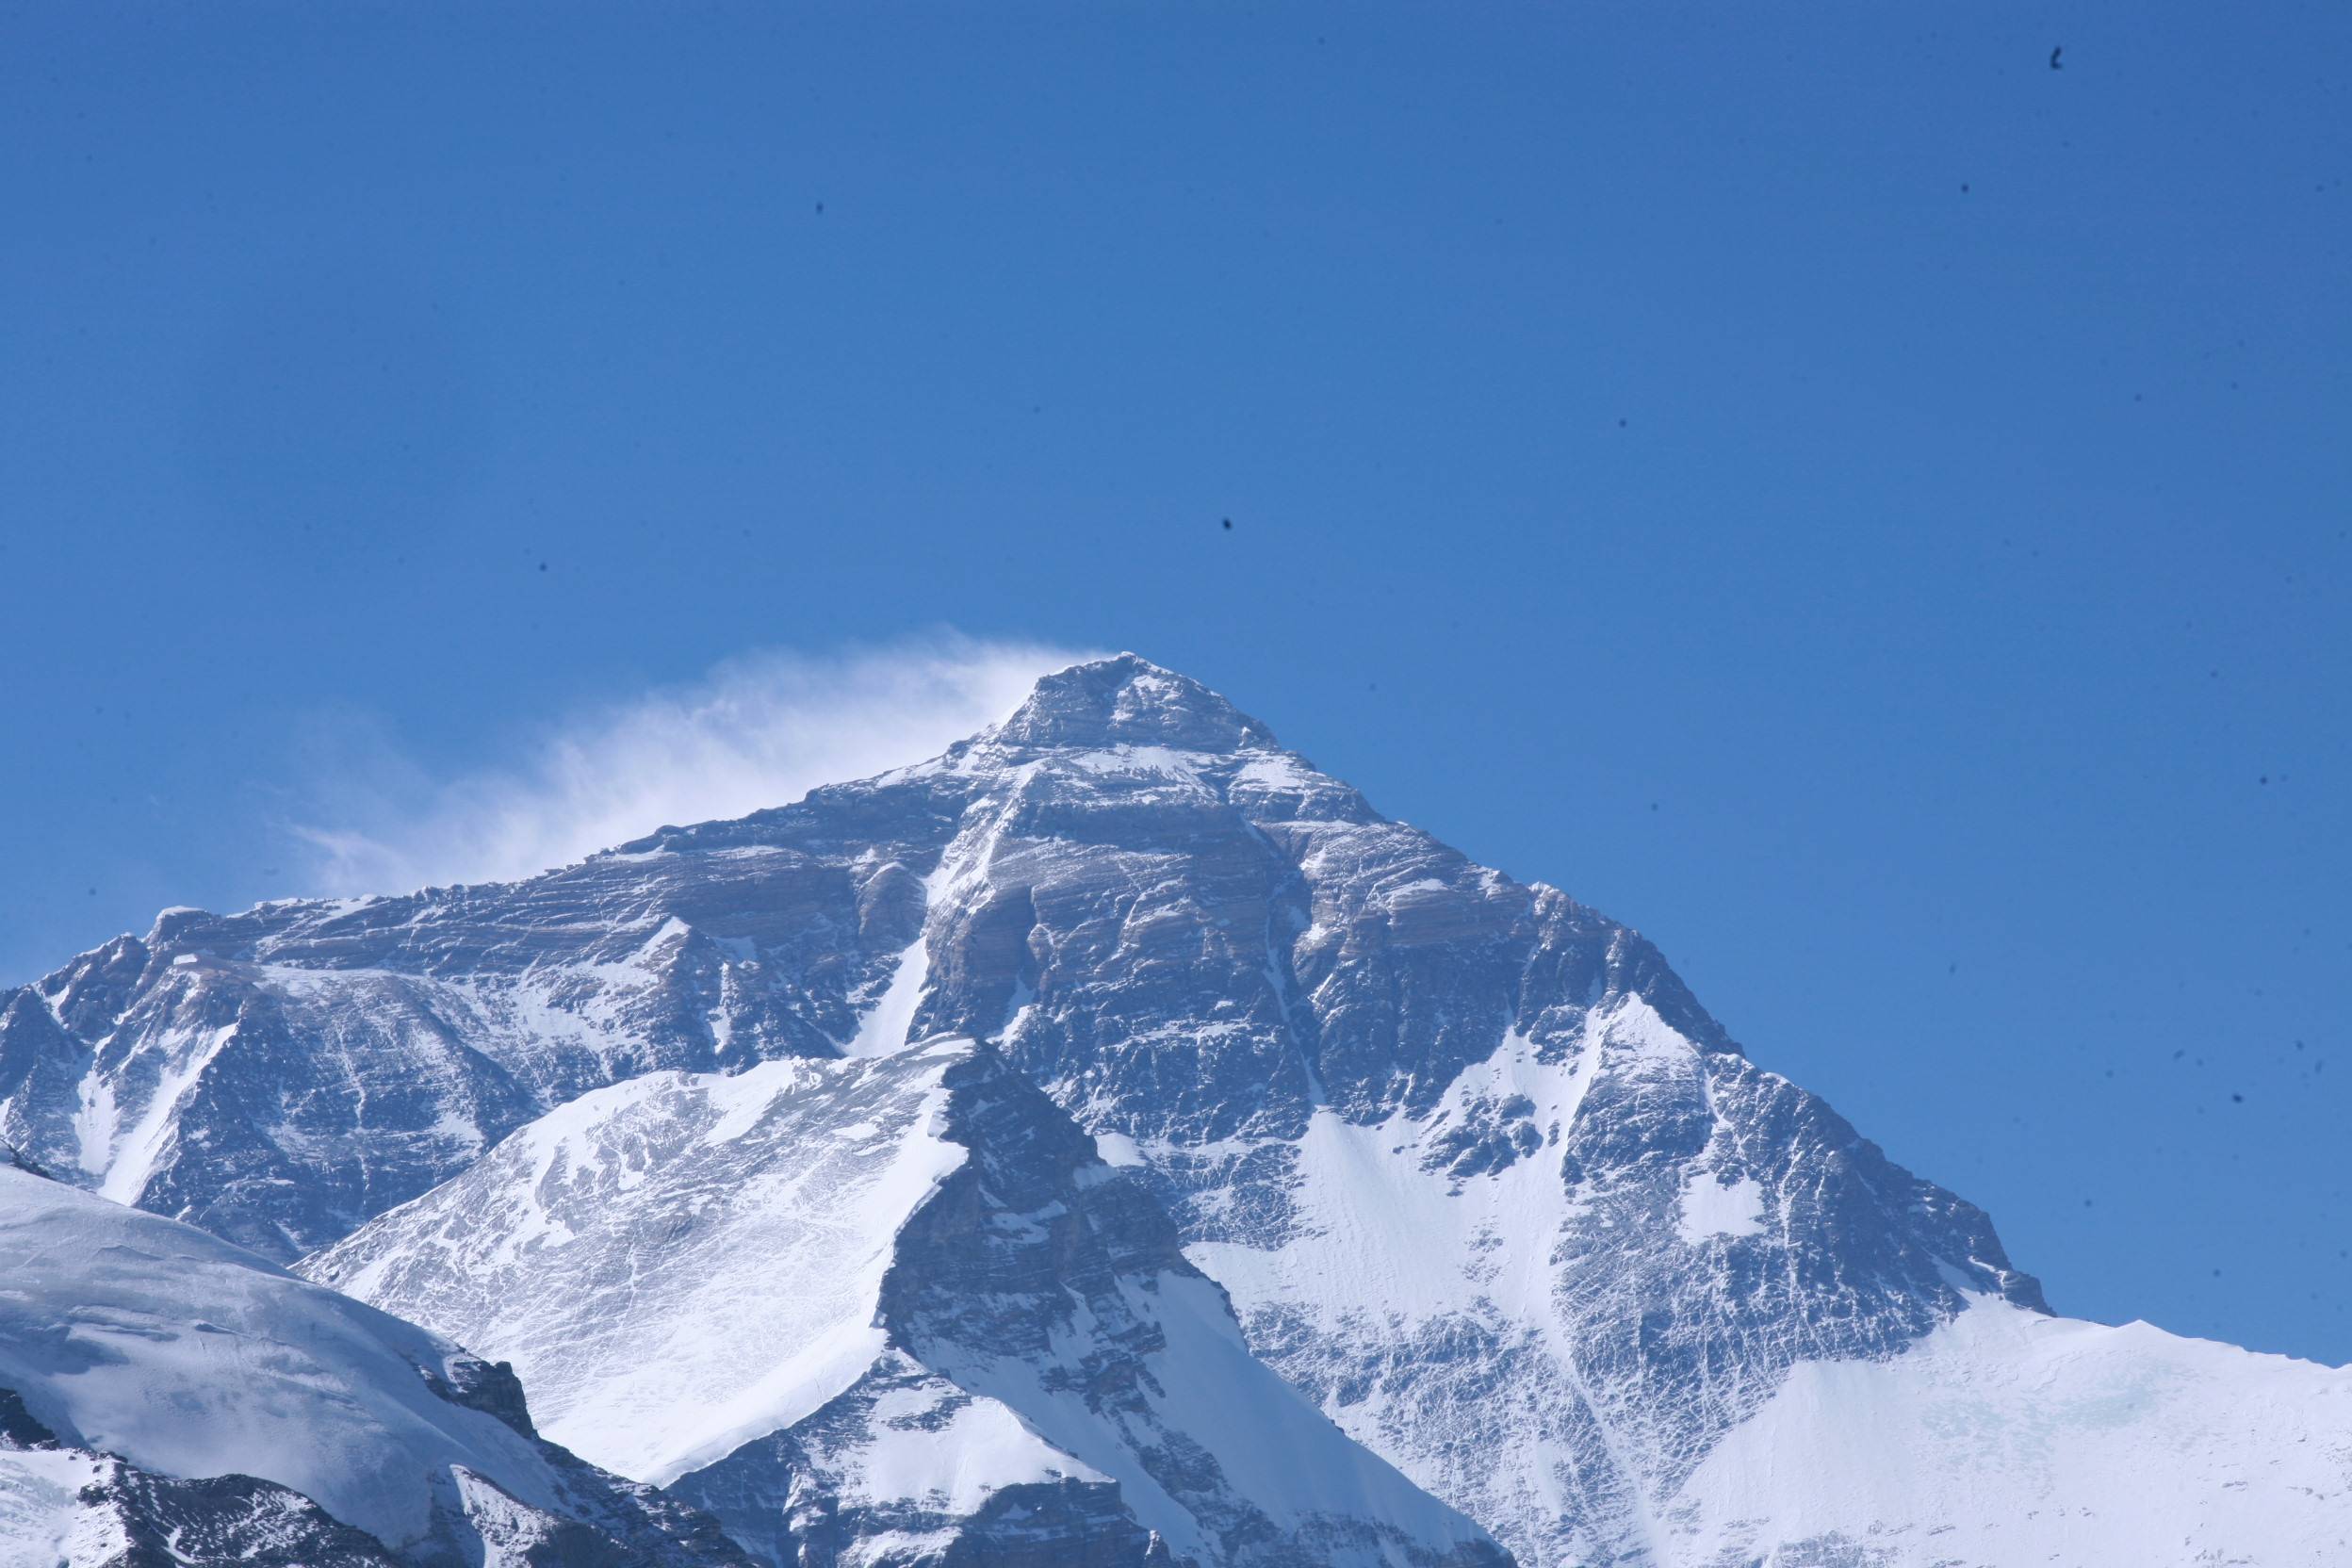 珠穆朗玛峰顶端图片